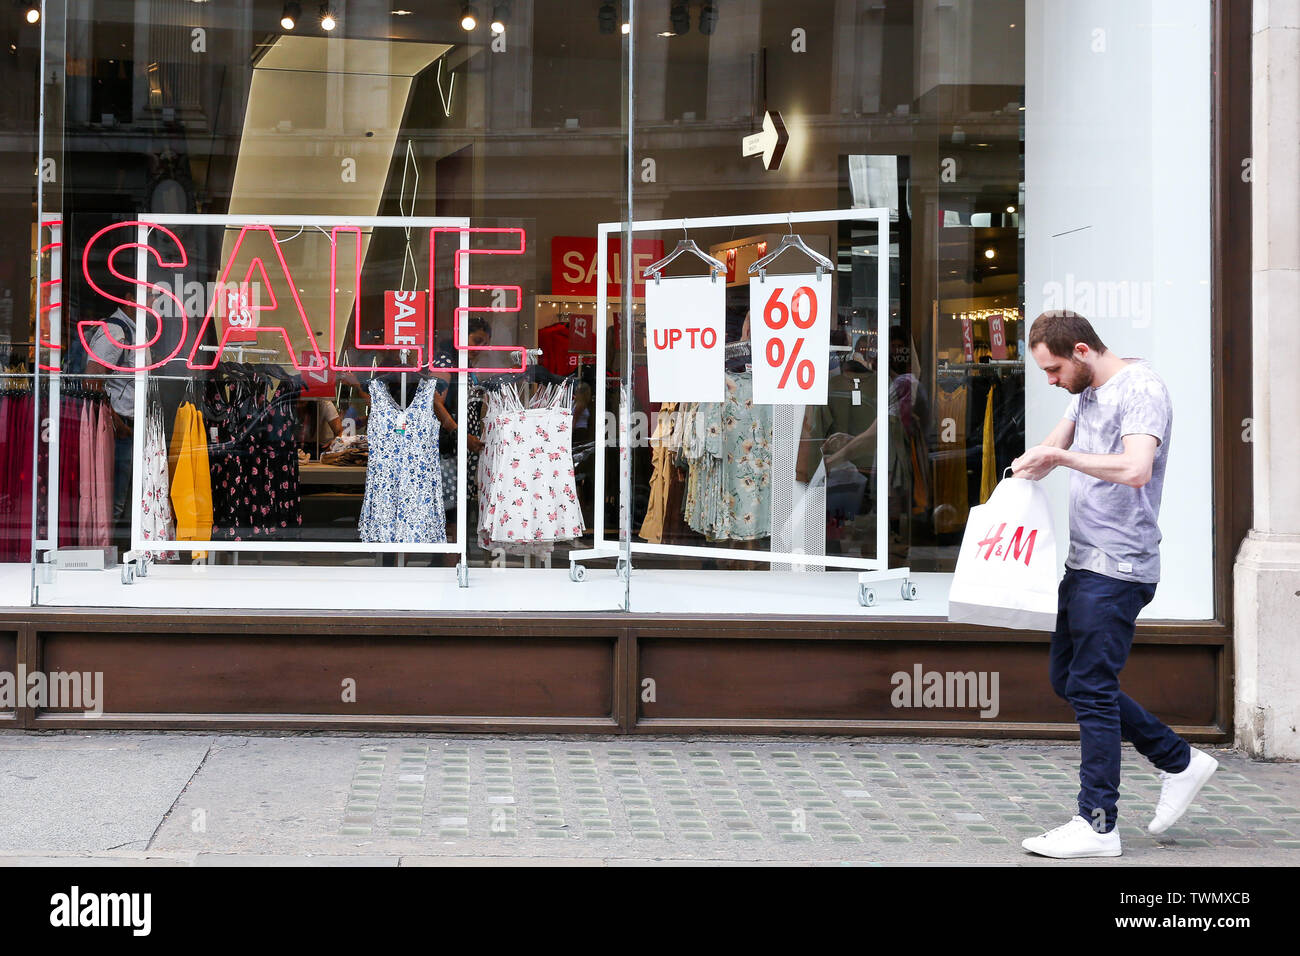 Un homme est titulaire d'un H&M Sac shopping en dehors de l'H&M magasin  départemental sur Oxford Street comme soldes d'été commencent. De nombreux  grands magasins offrent des rabais considérables puisqu'ils font face